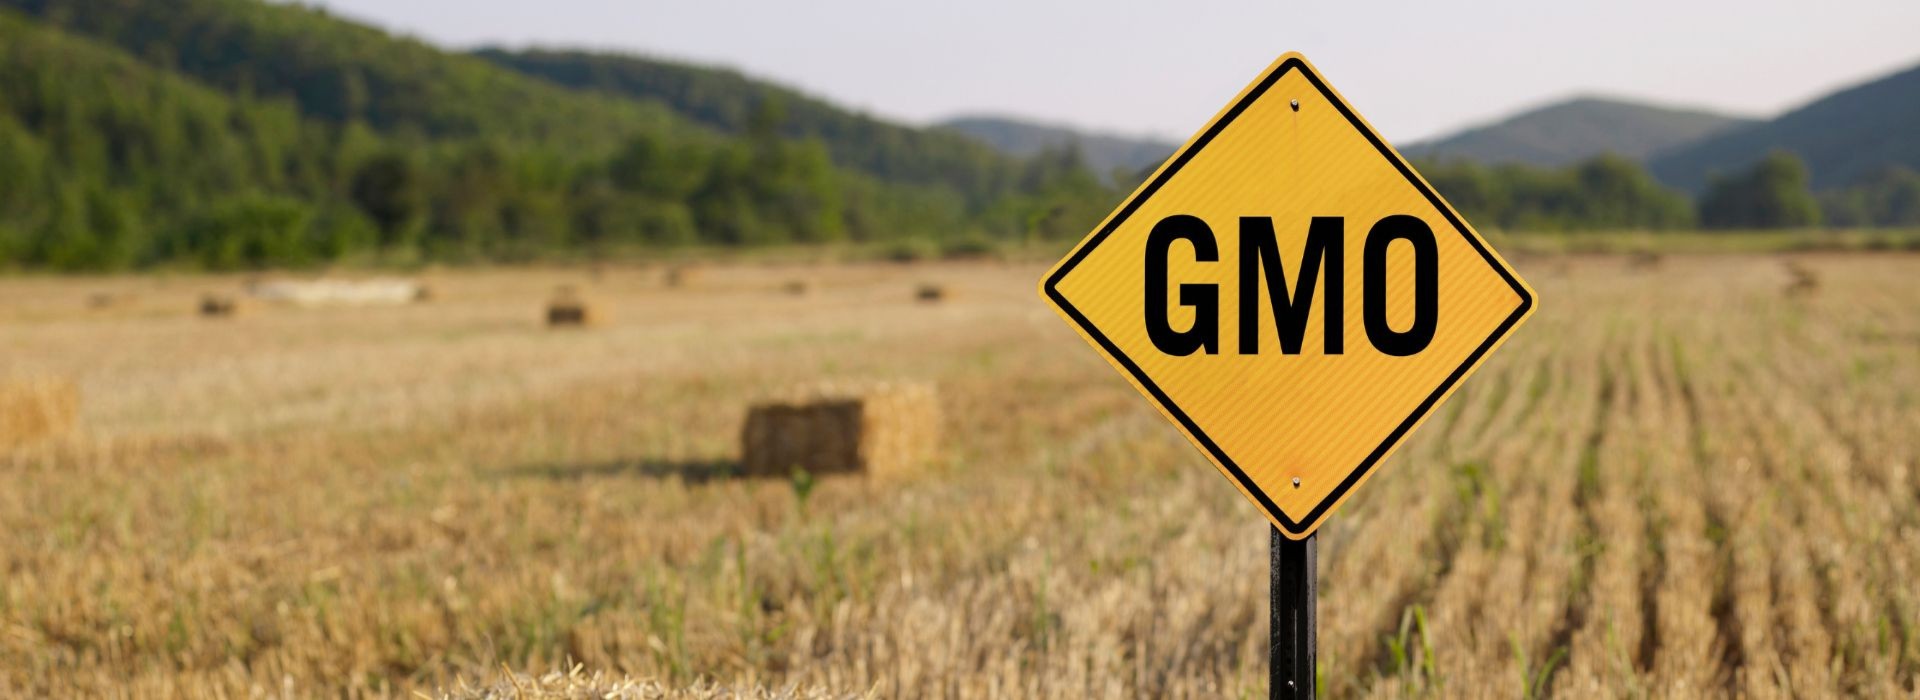 Czy powinniśmy się obawiać żywności GMO?